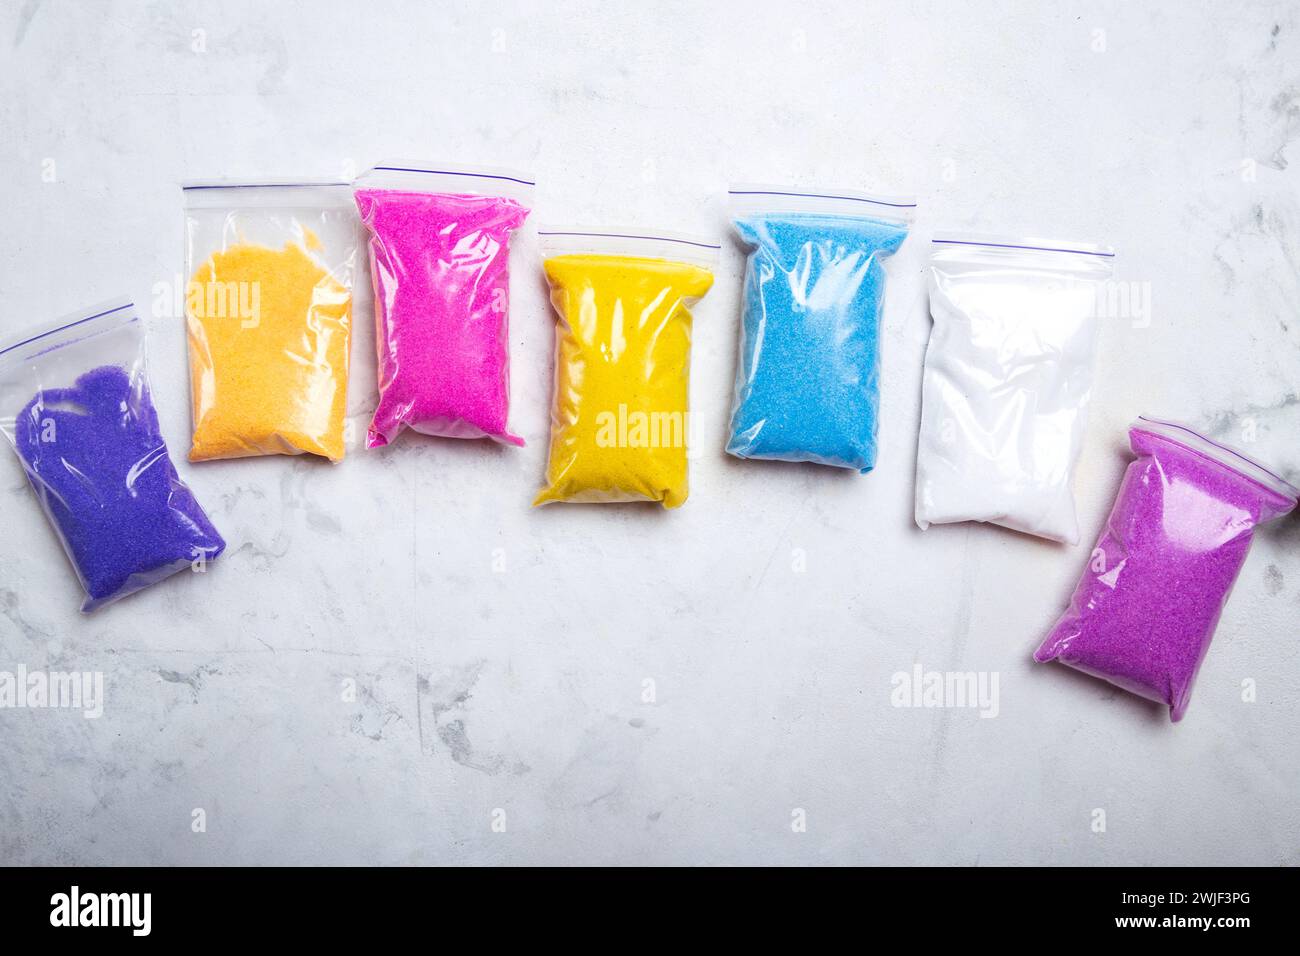 Colori arcobaleno di materiali abrasivi in imballaggi in plastica su superficie ruvida Foto Stock